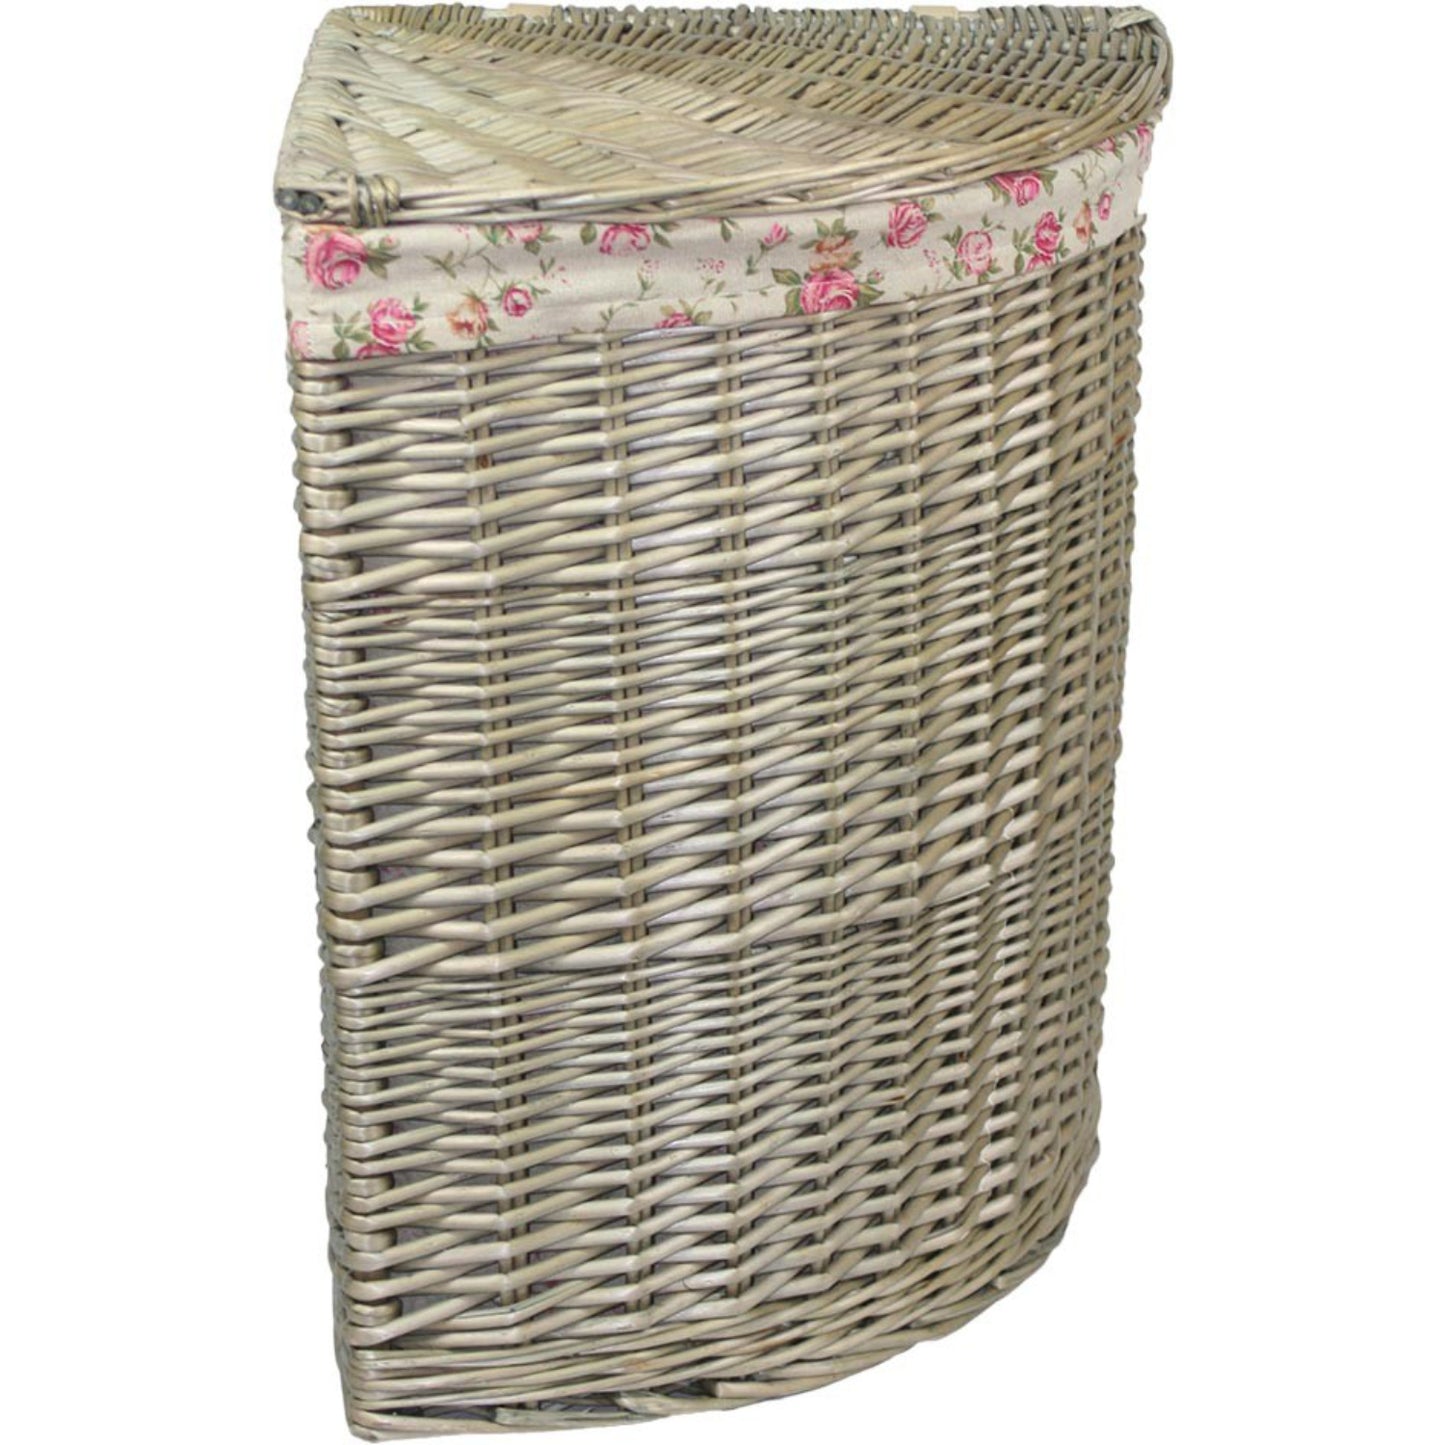 Large Antique Wash Corner Linen Basket With Garden Rose Lining